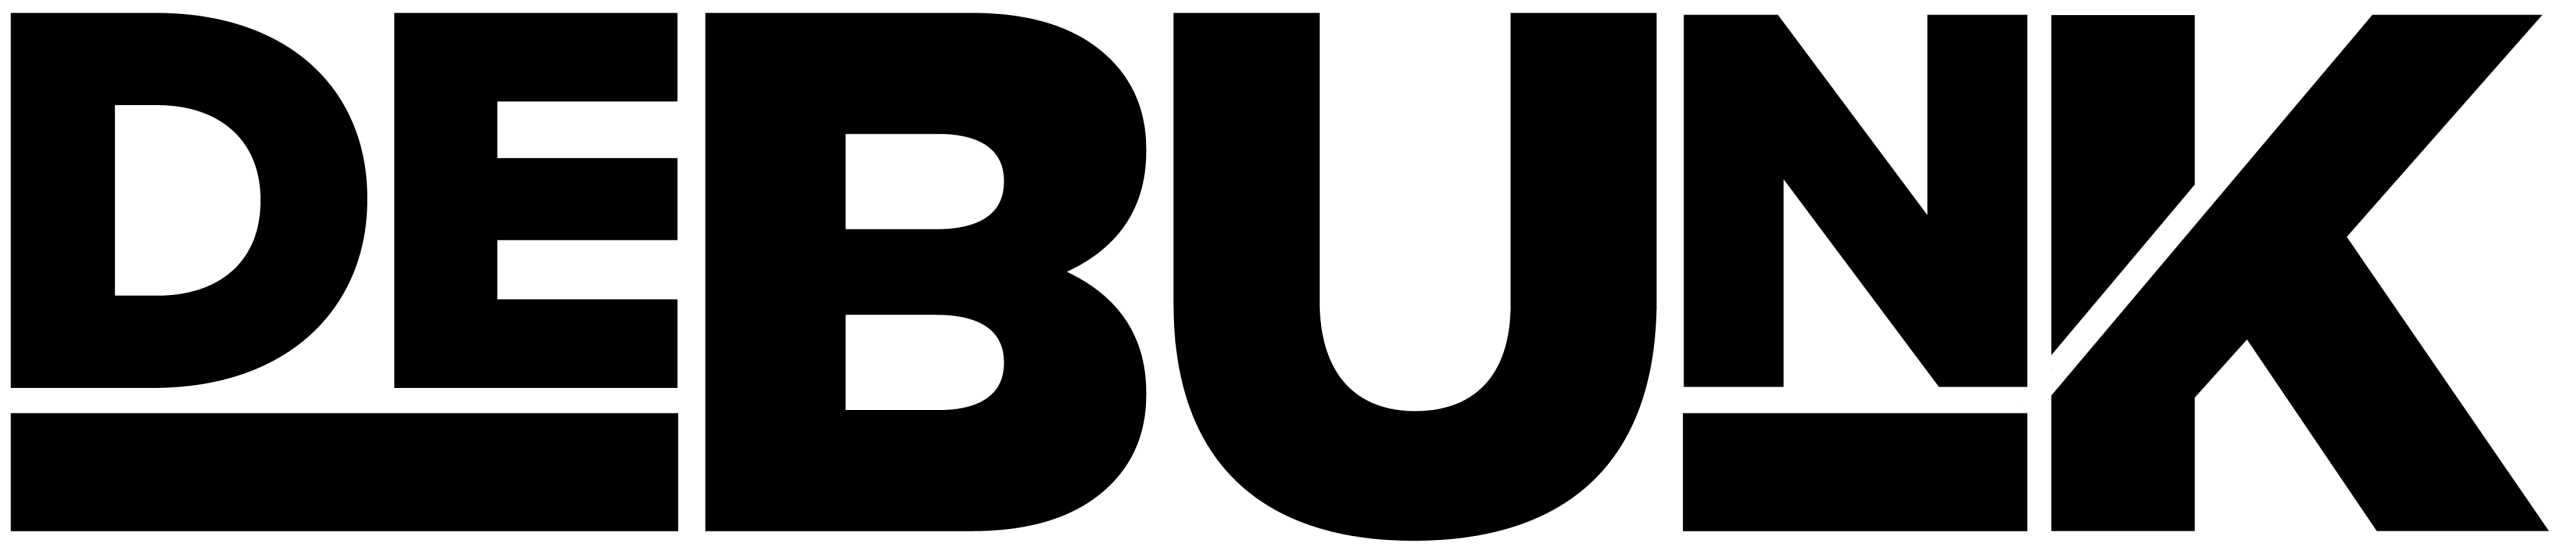 logo-black-1-scaled.webp